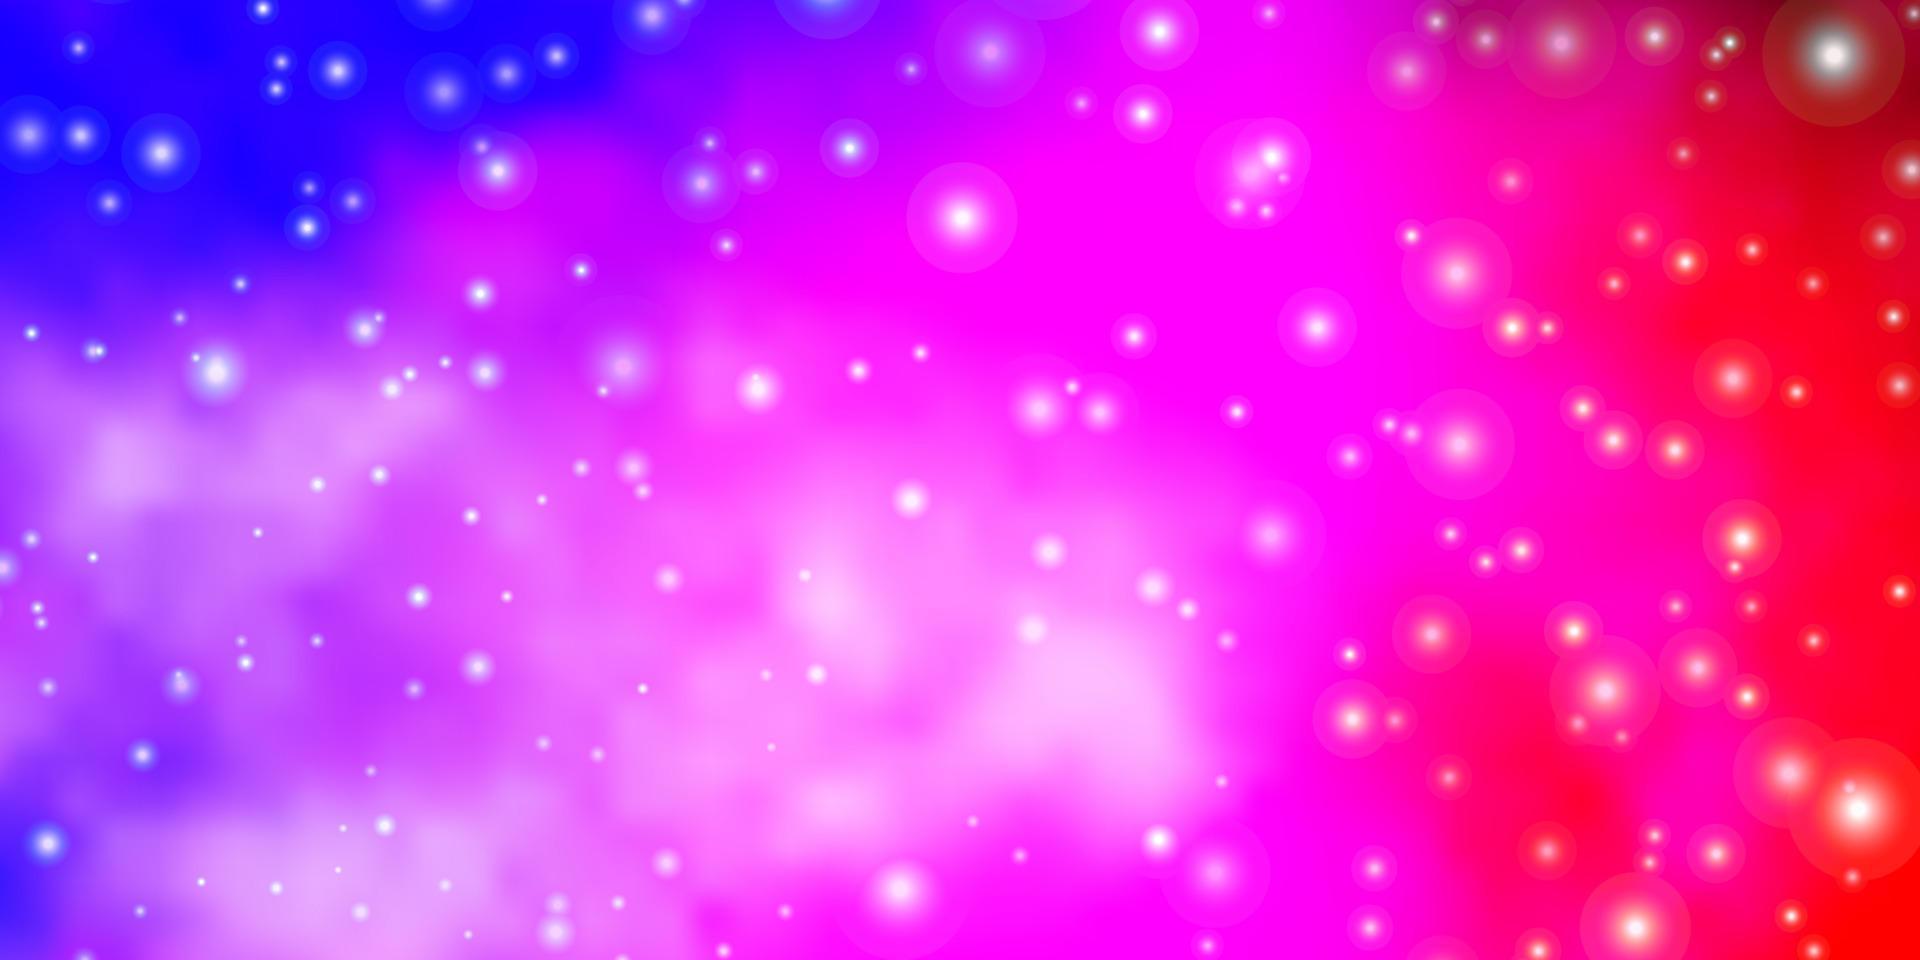 Fondo de vector de color rosa claro, azul con estrellas pequeñas y grandes.